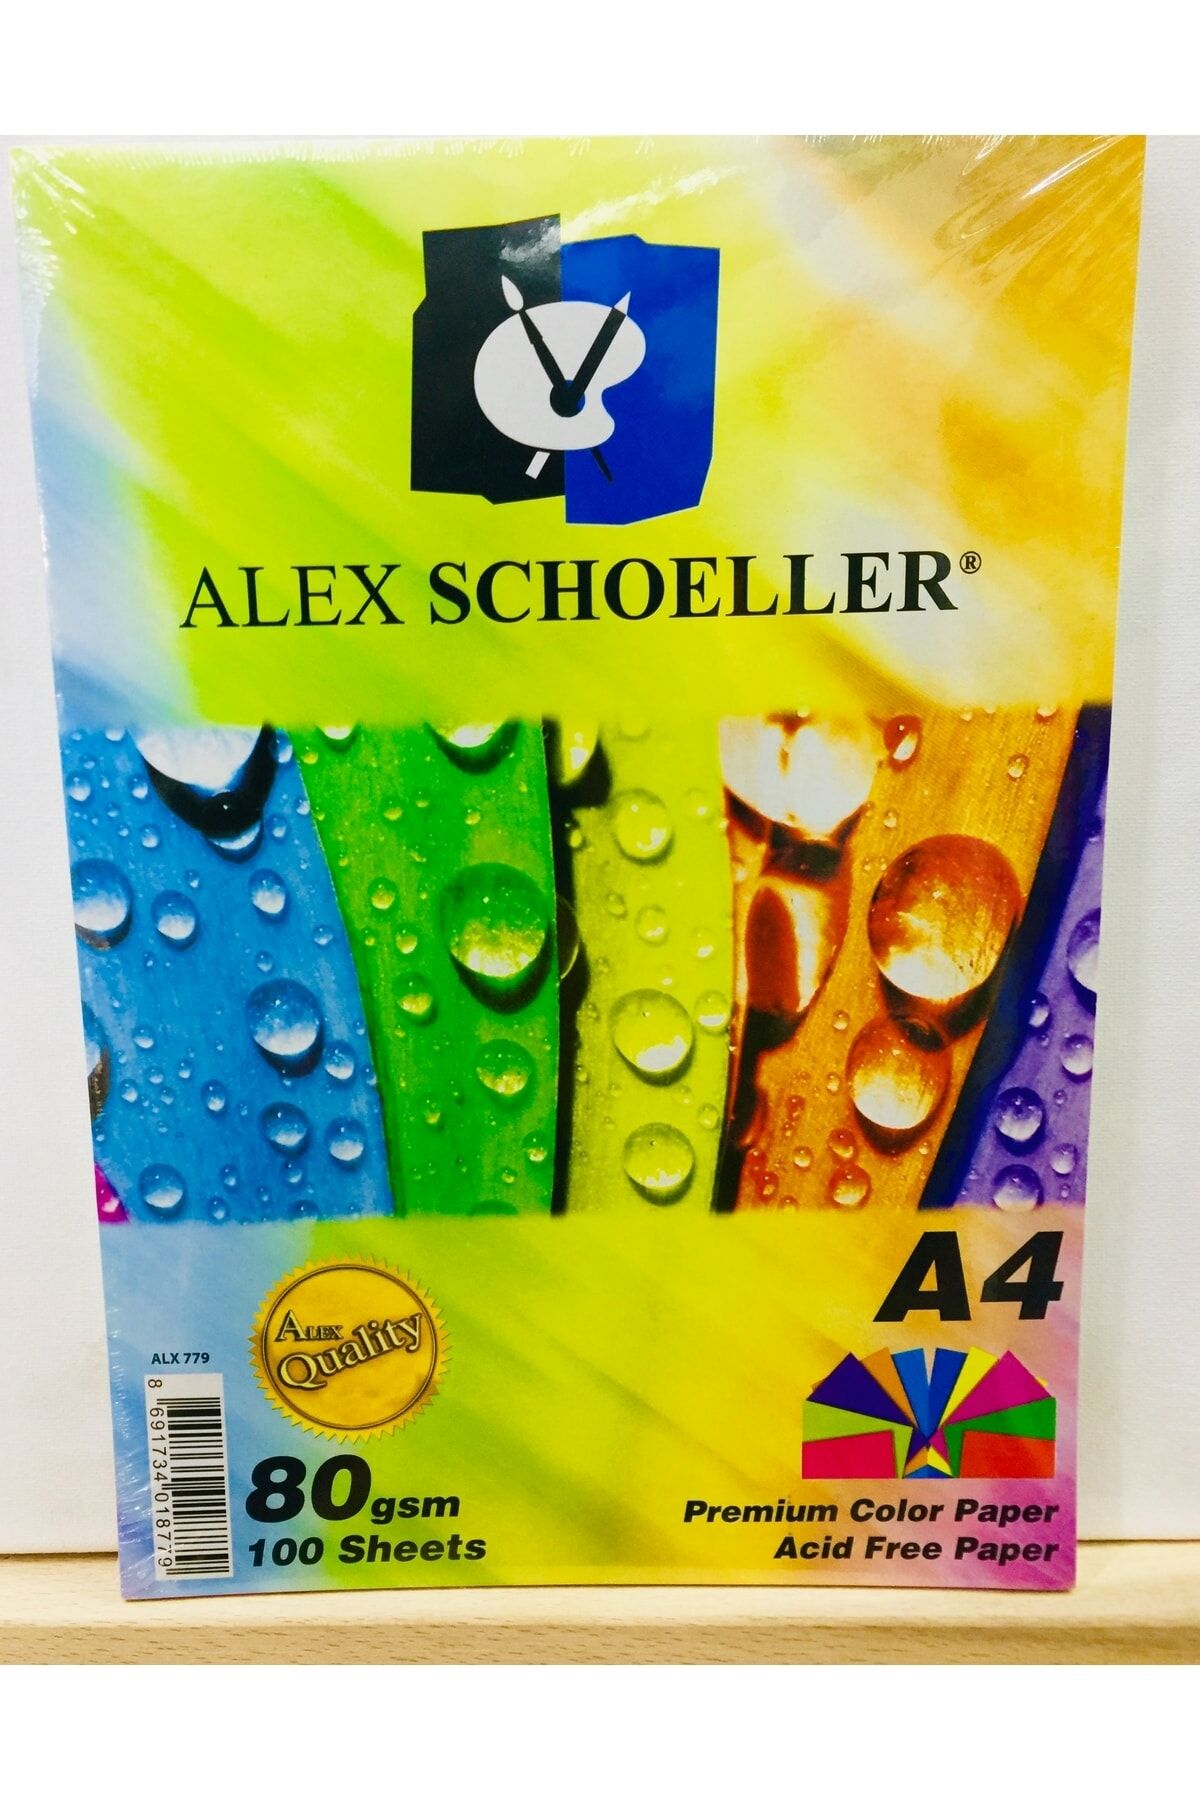 Schoeller Renkli Fotokopi Kağıdı A4 Karışık 10 Renk 100'lü Paket